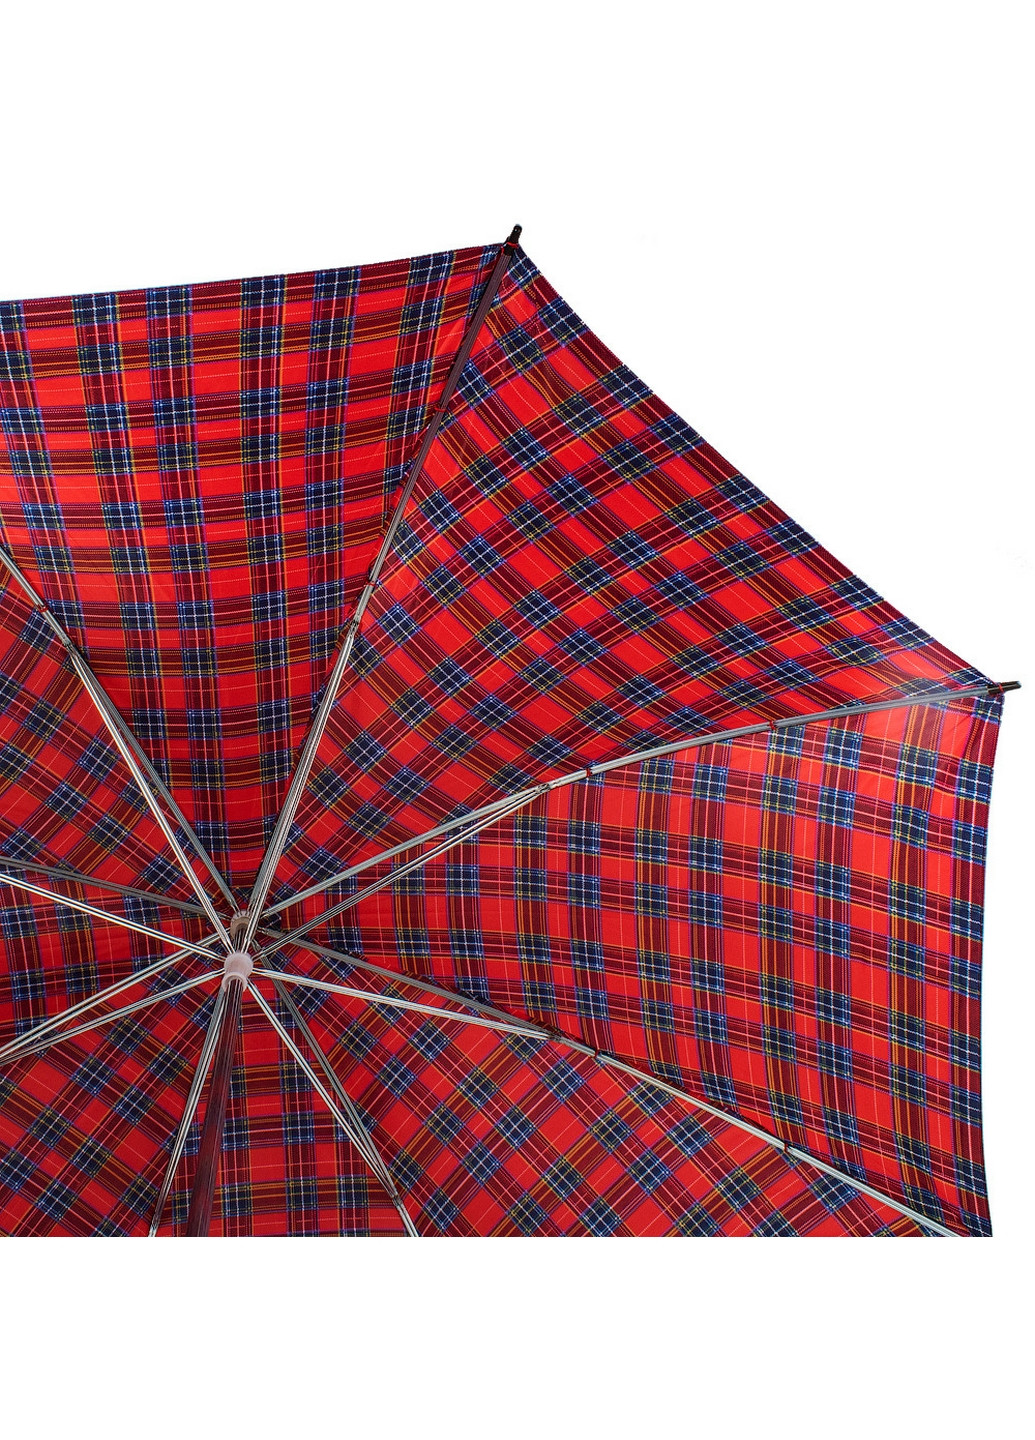 Зонт-трость мужской механический 117 см Incognito (260285563)